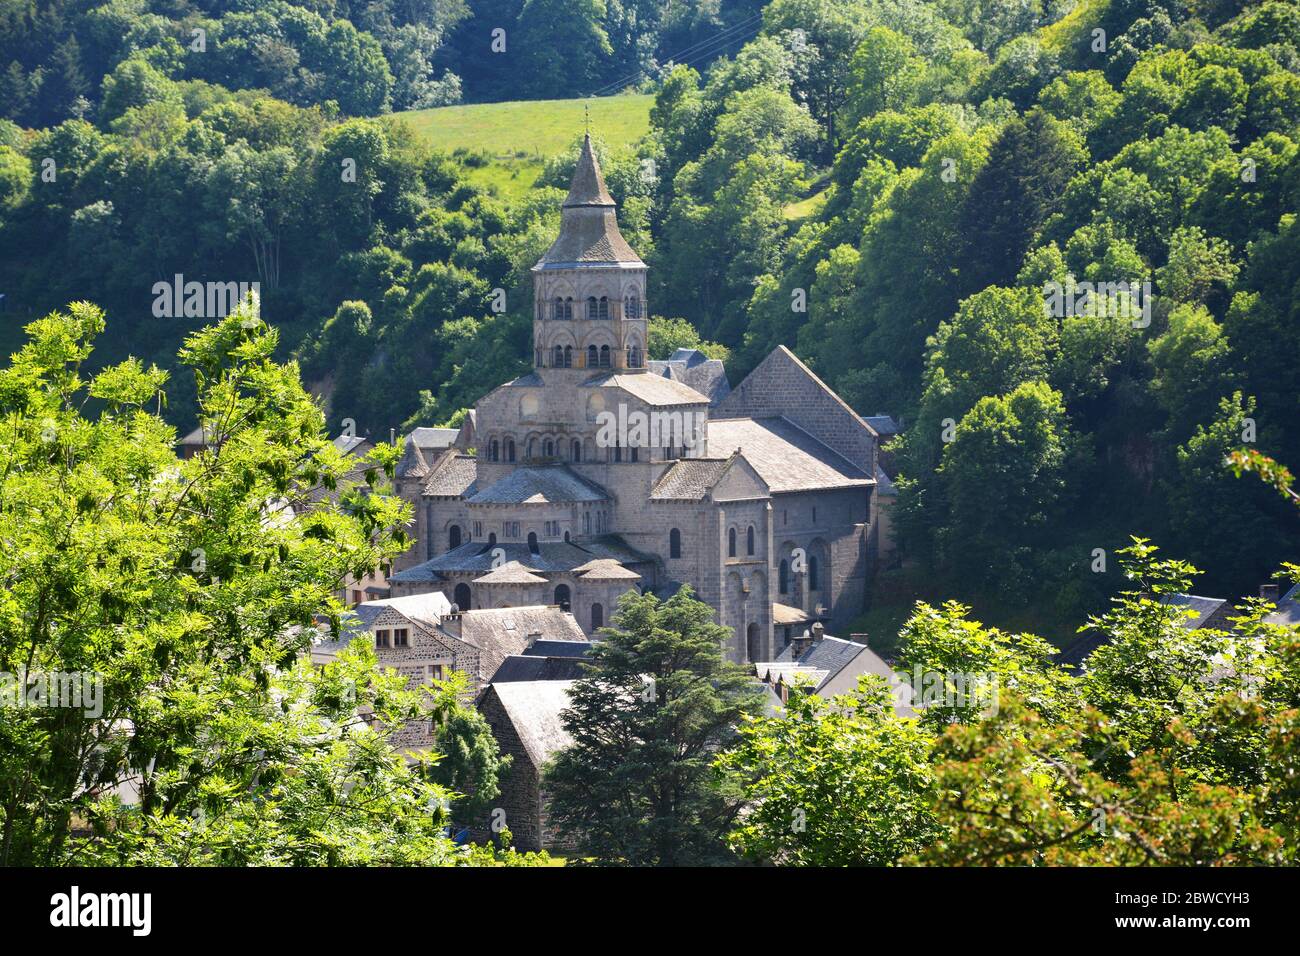 roman church, Parc naturel regional des volcans d'Auvergne, Orcival, Puy-de-Dome, Auvergne, Massif-Central, France Stock Photo